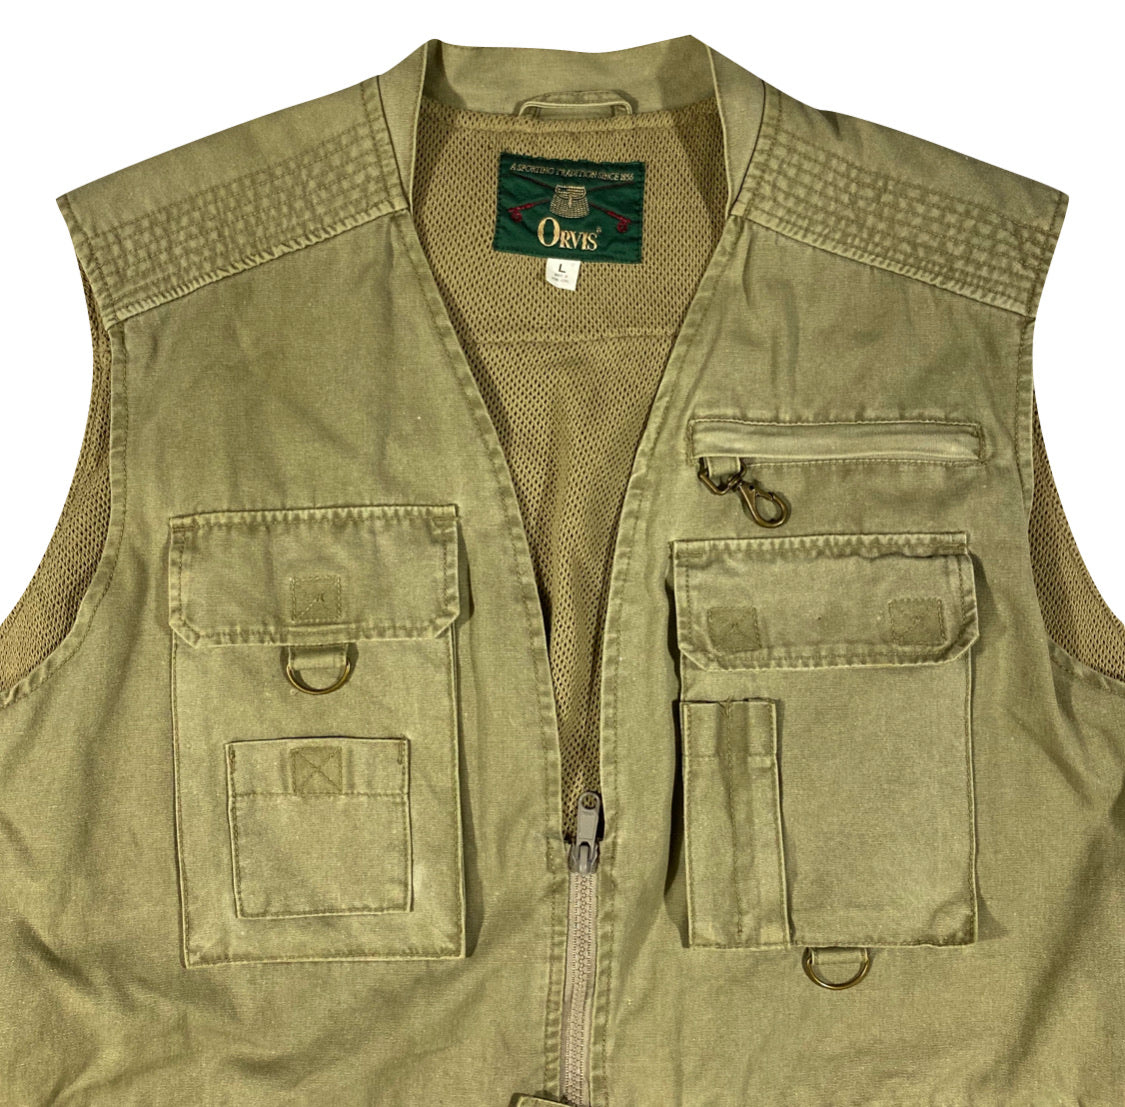 Orvis tactical vest L/XL